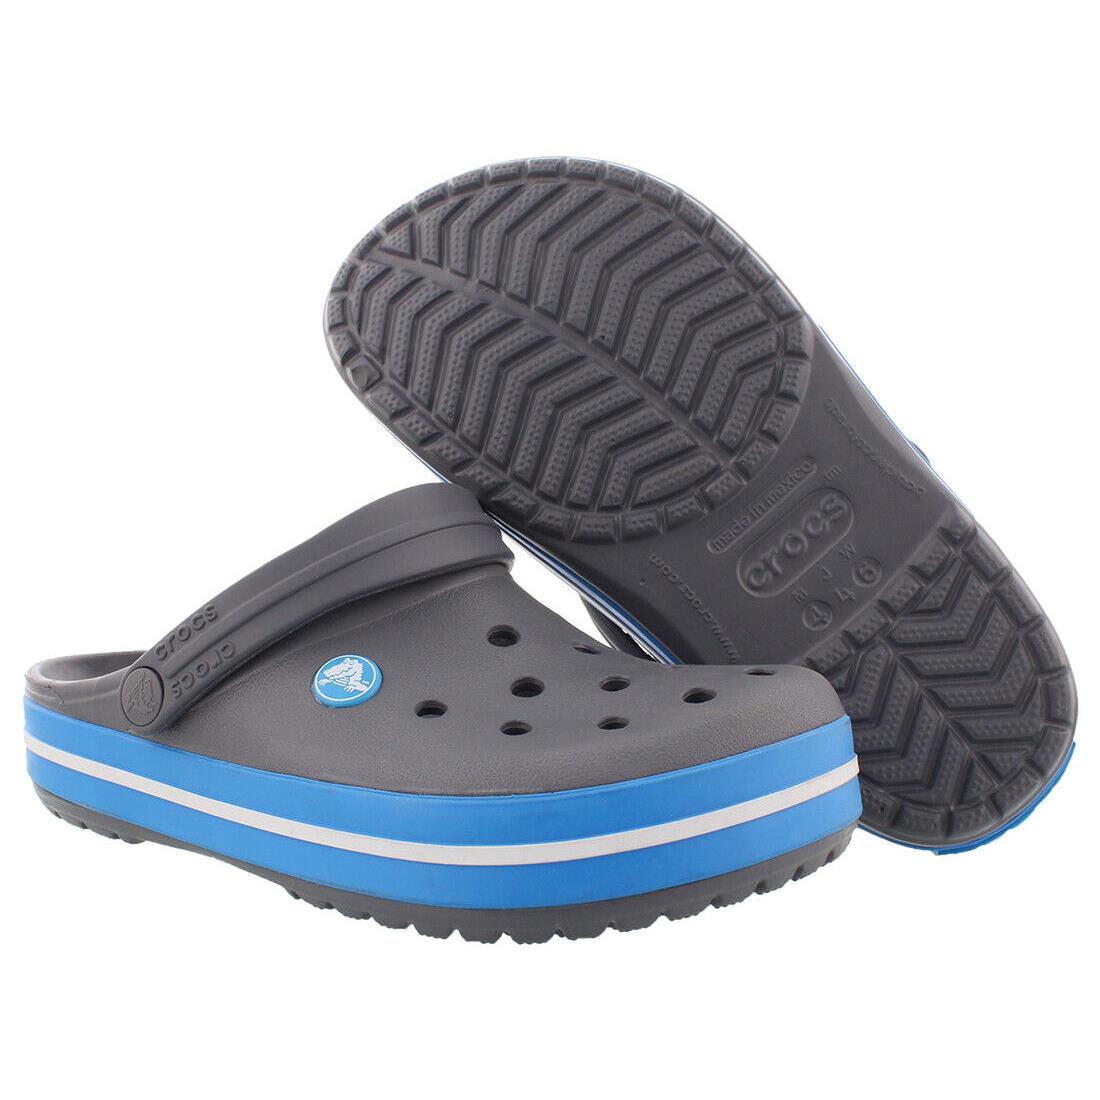 Crocs Crocband Clogs Unisex Shoes Size 5 Color: Charcoal/ocean